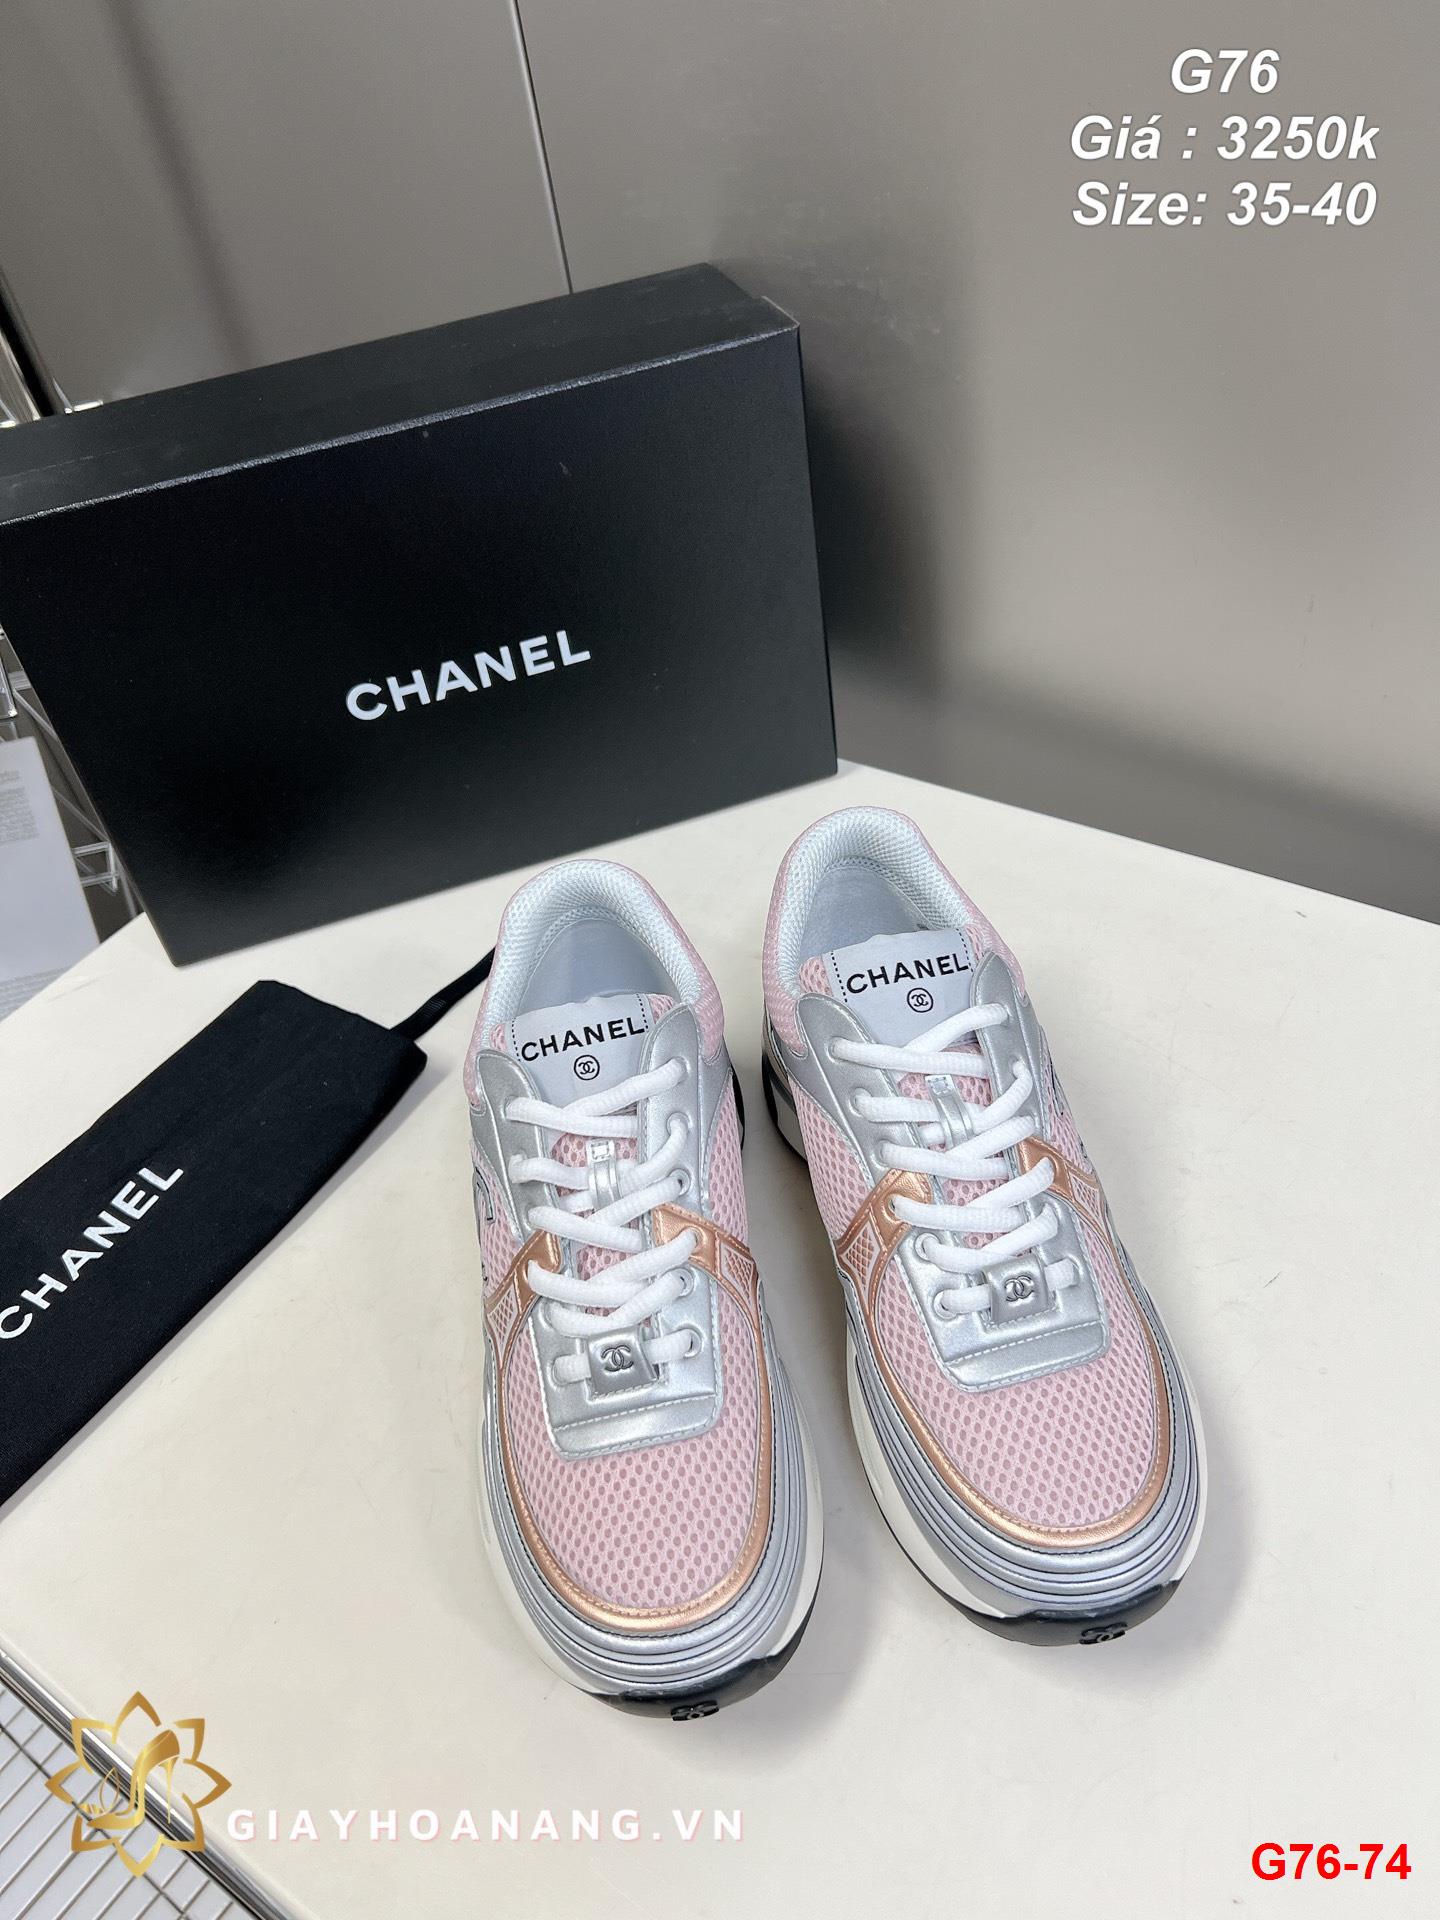 G76-74 Chanel giày thể thao siêu cấp